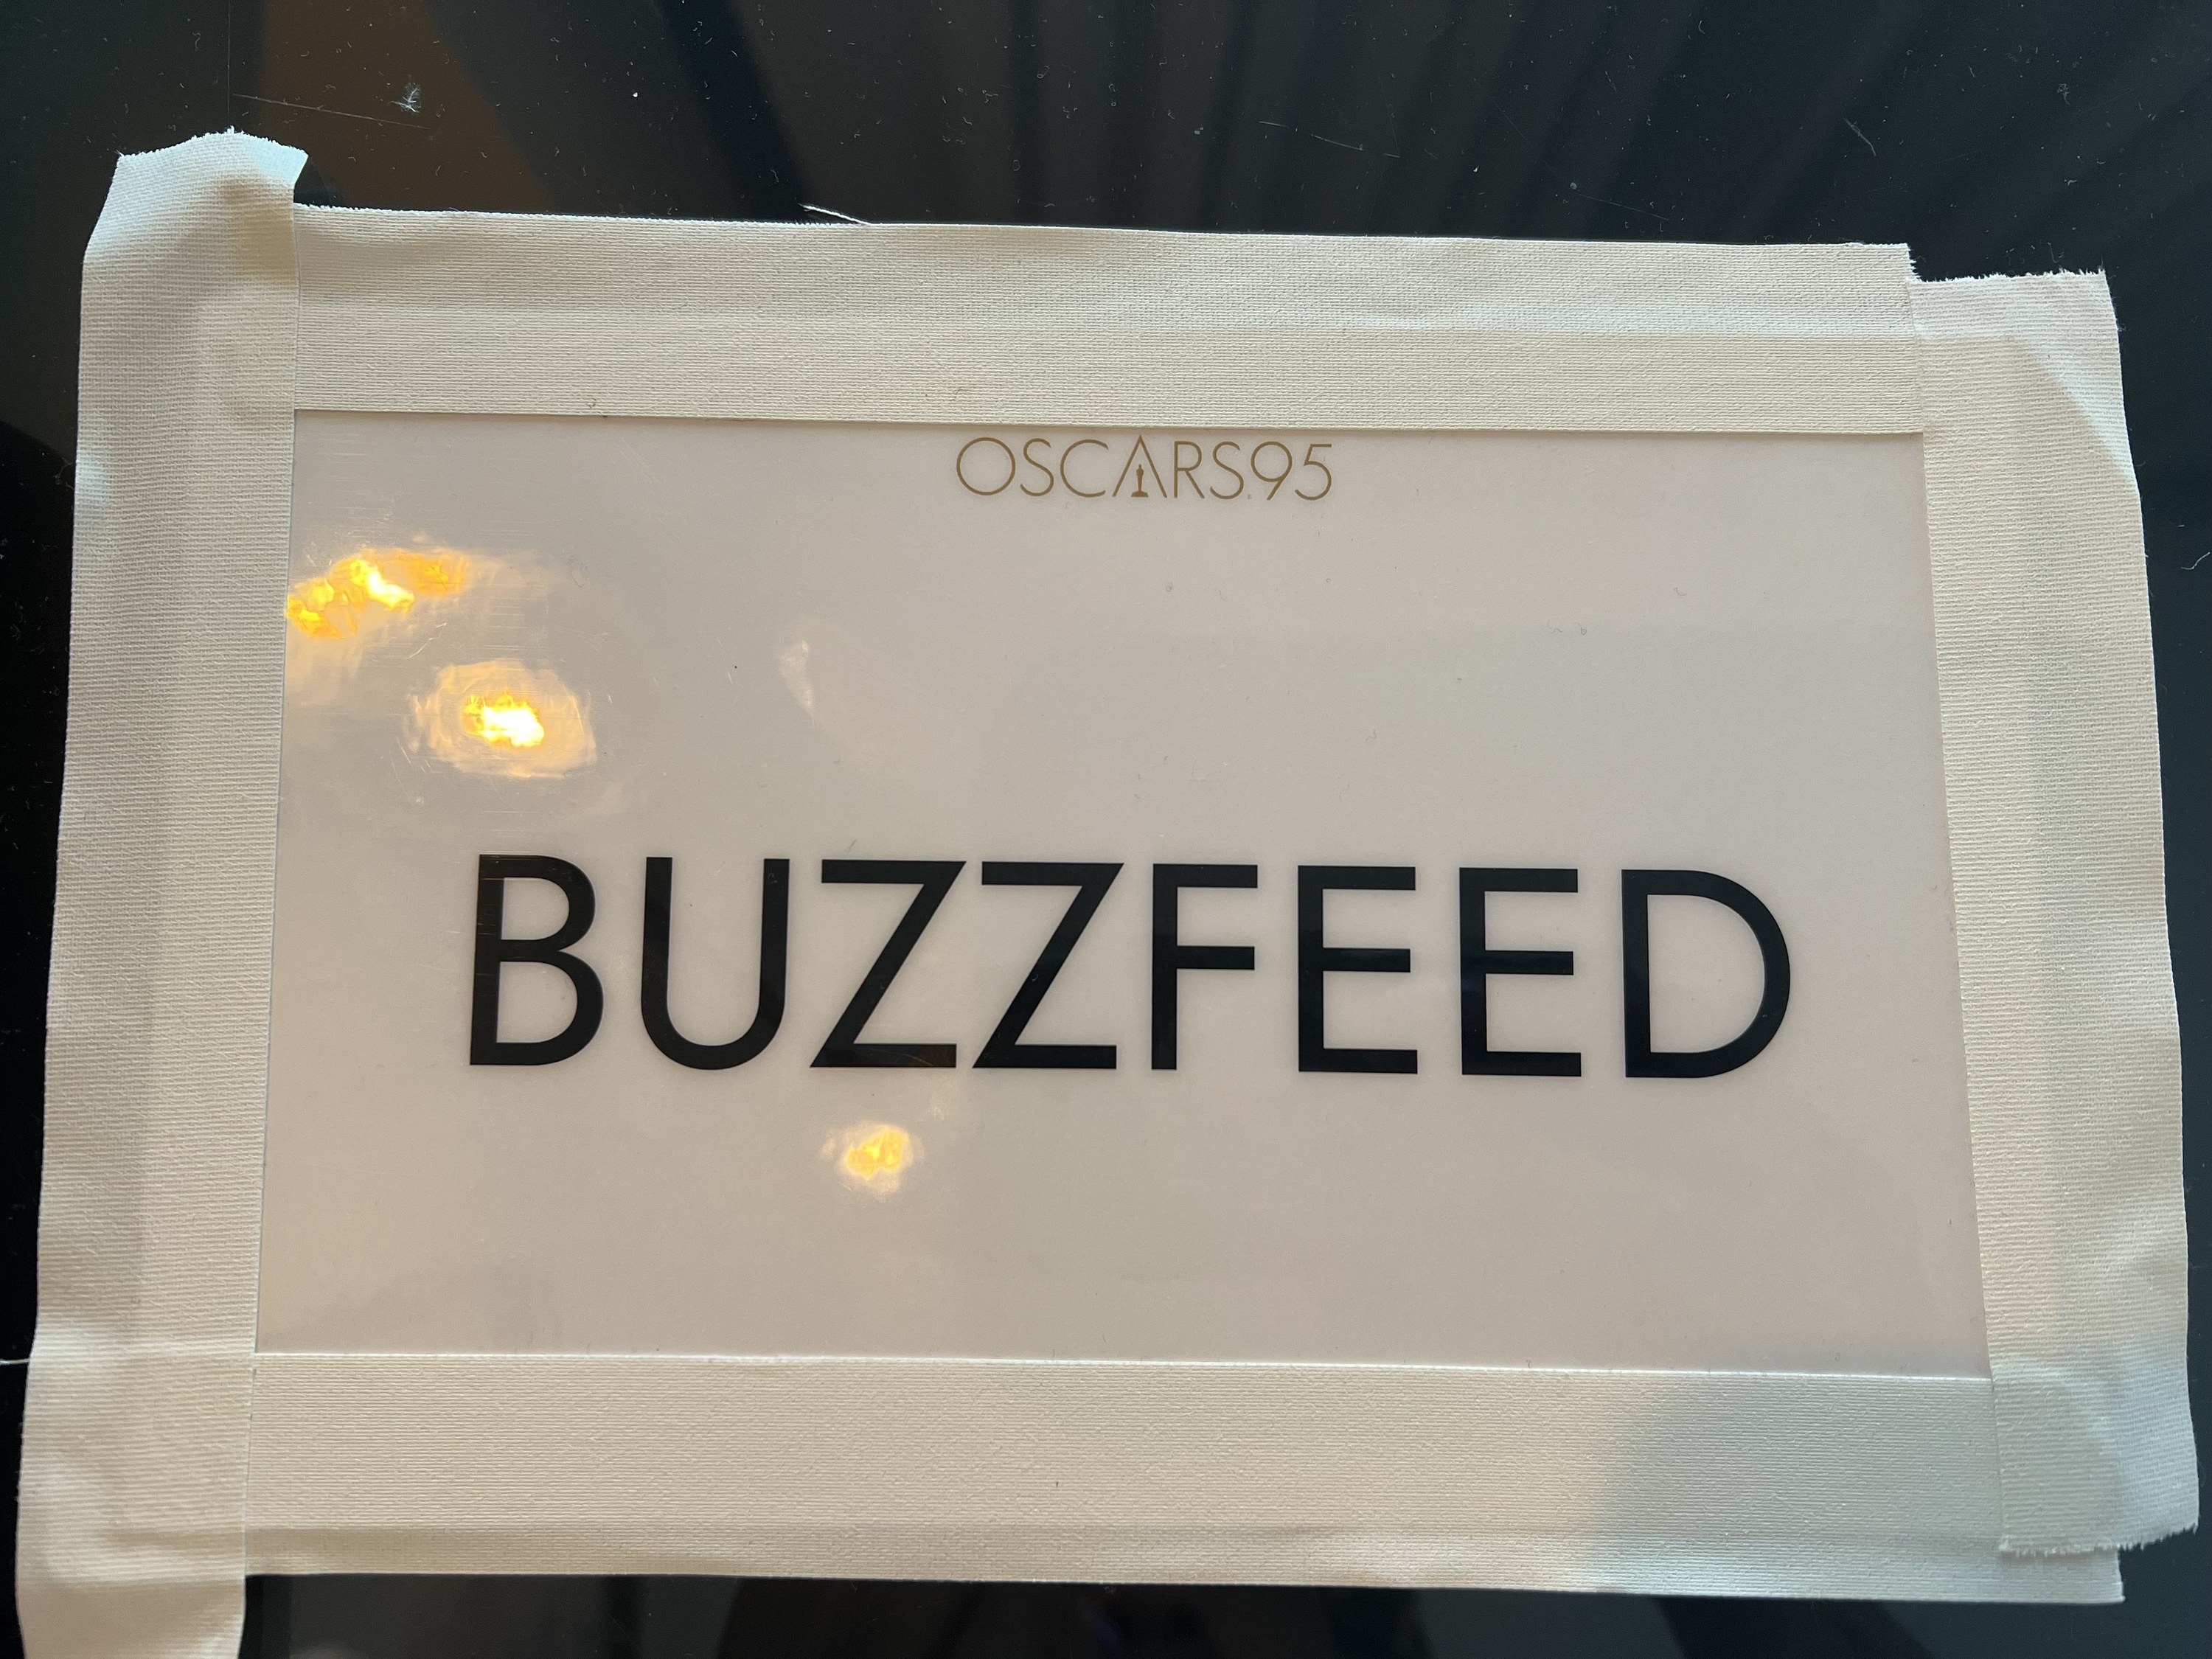 A closeup of a BuzzFeed placard